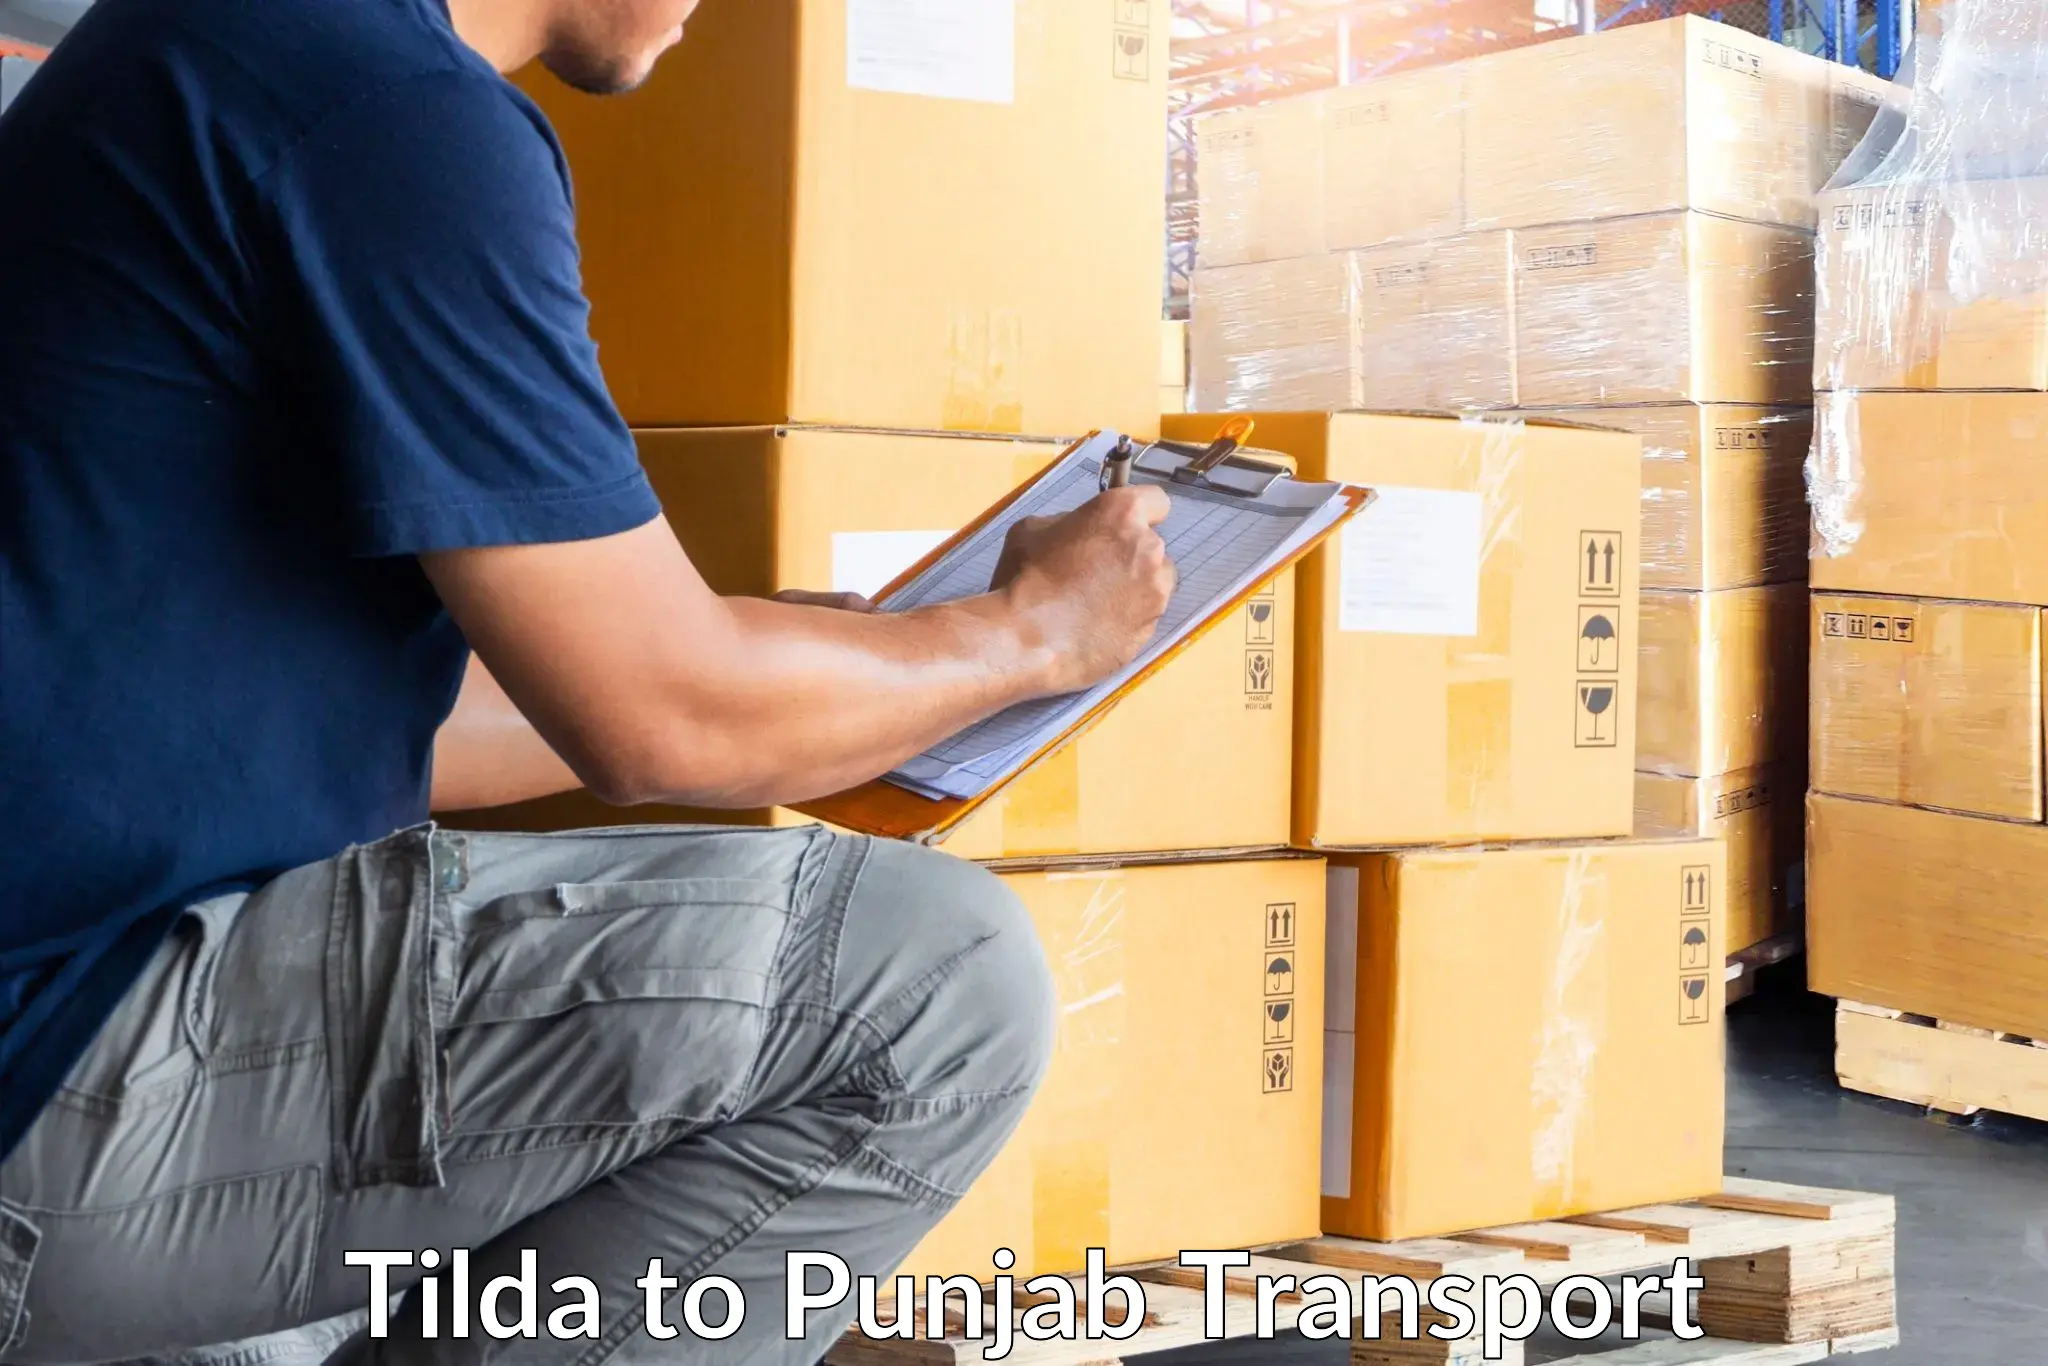 Goods delivery service Tilda to Punjab